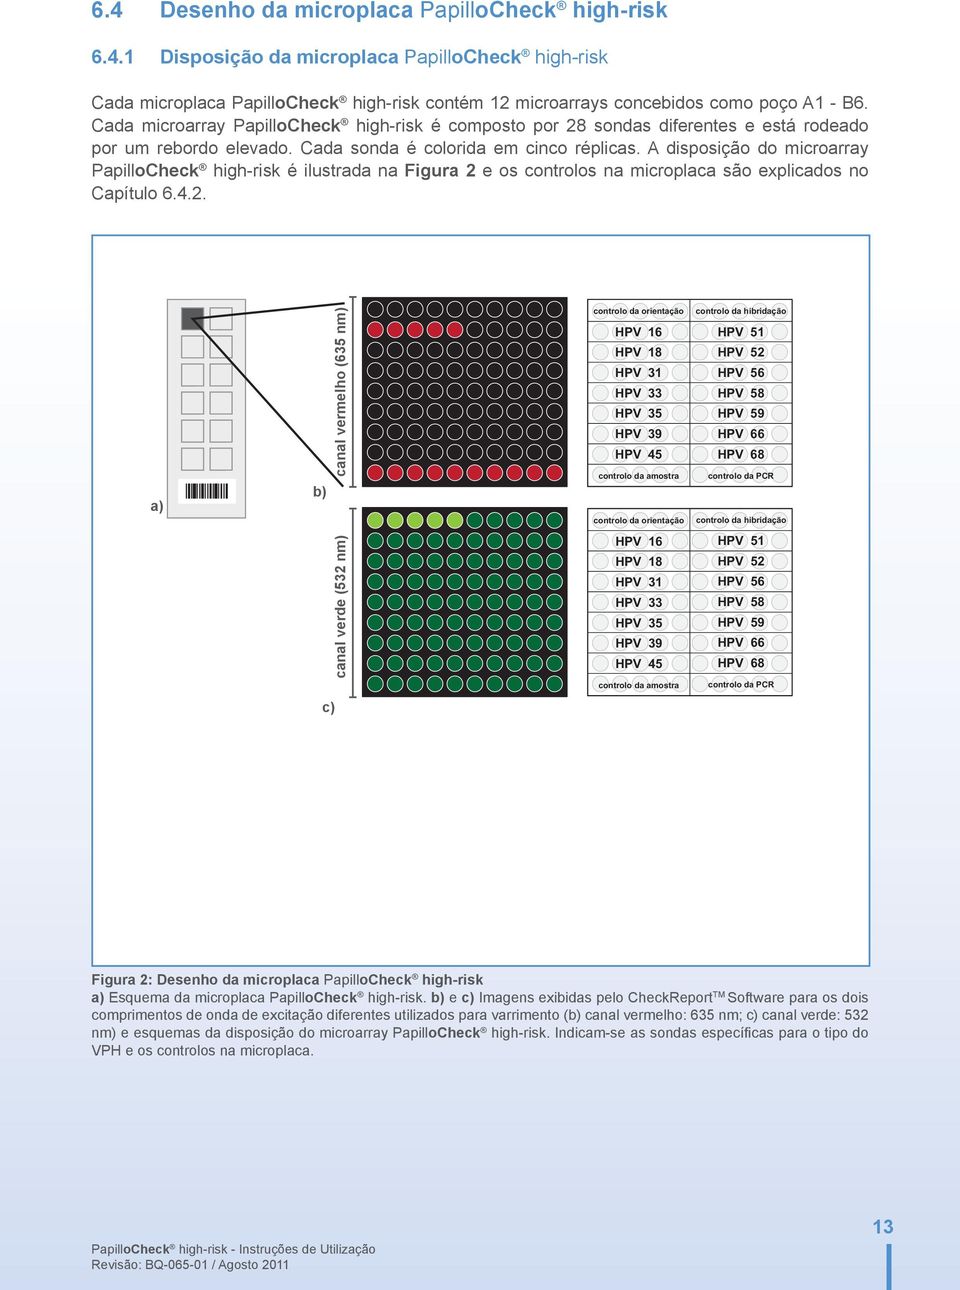 A disposição do microarray PapilloCheck high-risk é ilustrada na Figura 2 